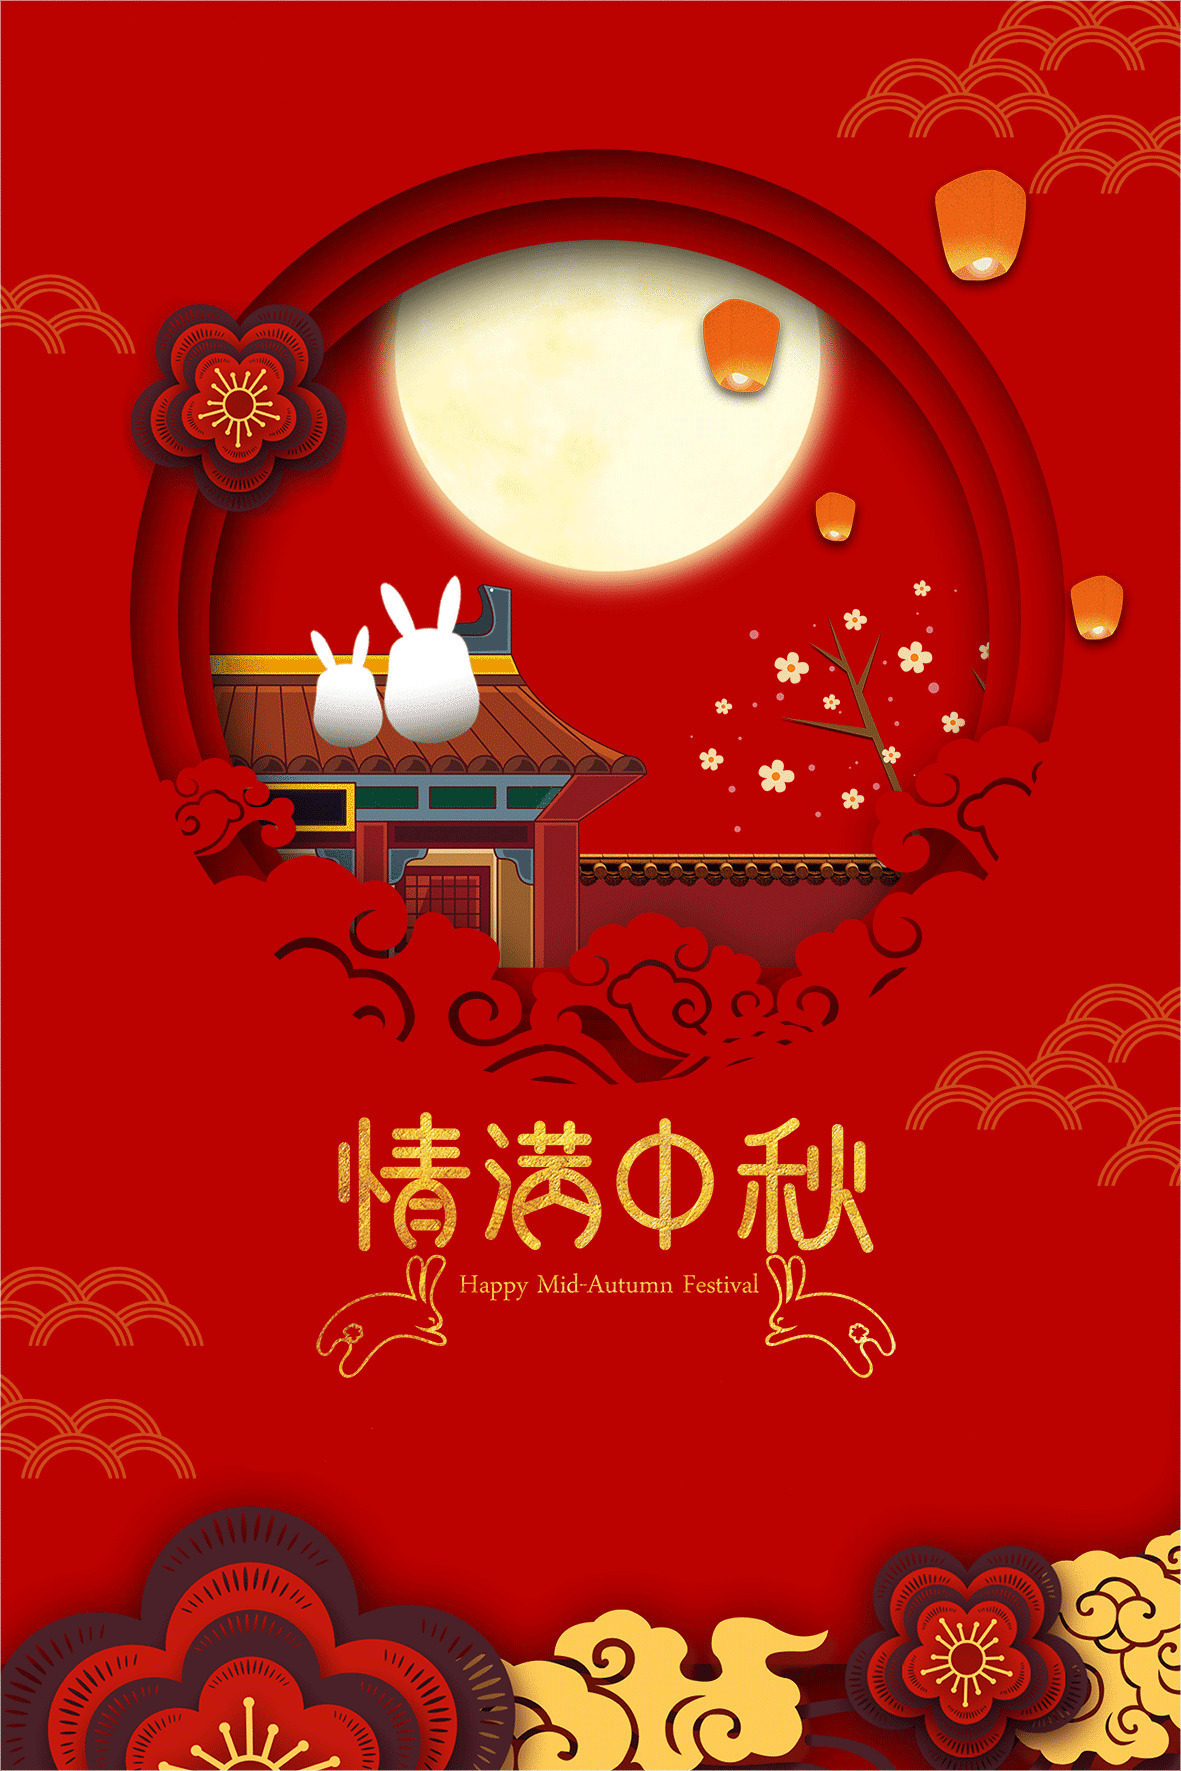 情满中秋小兔子站在房顶上看孔明灯gif图片:中秋节